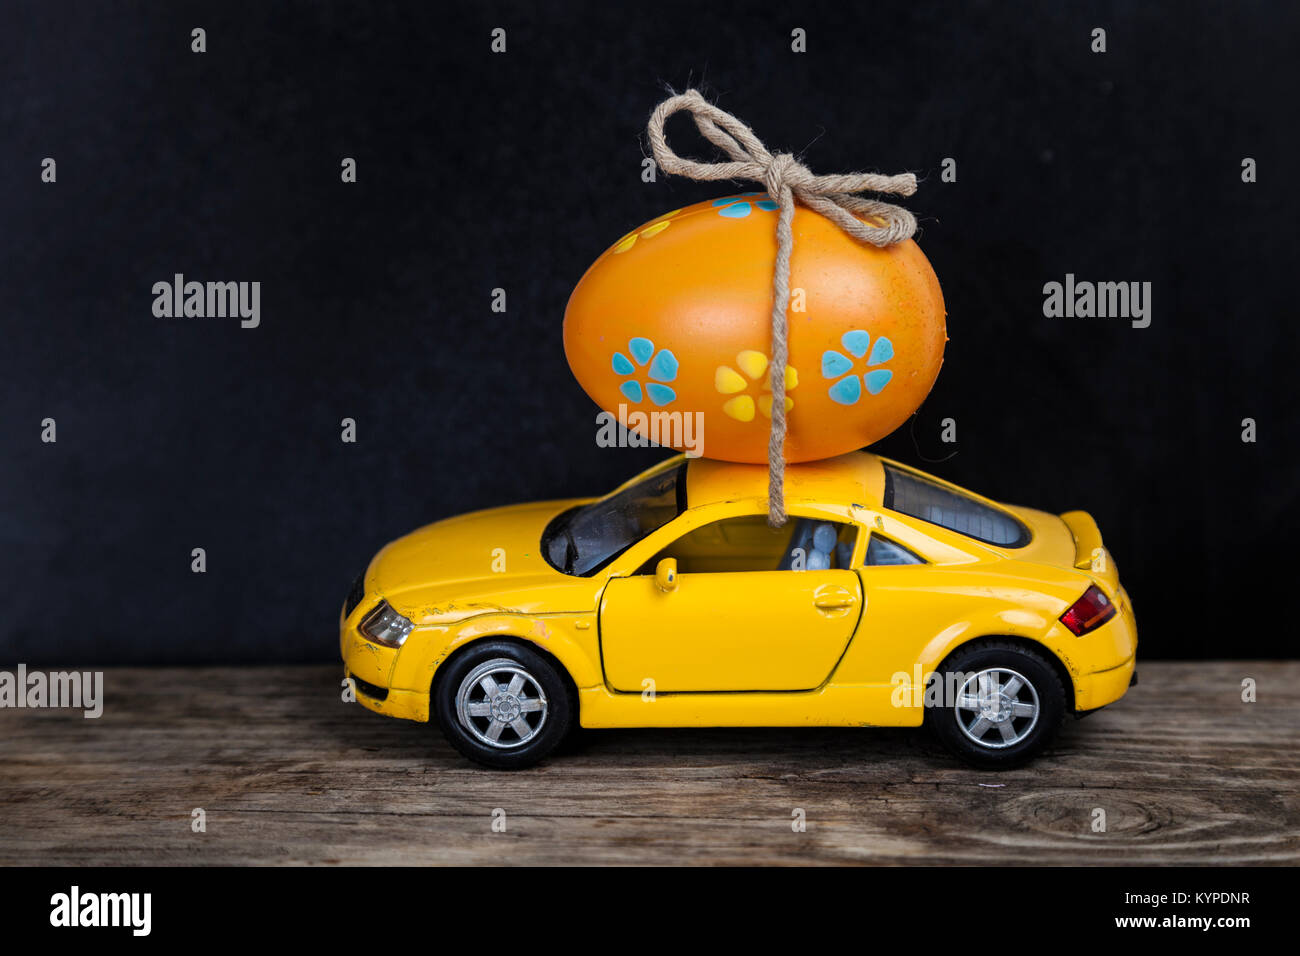 Giallo auto giocattolo con uovo di pasqua. La pasqua ancora in vita. Foto Stock